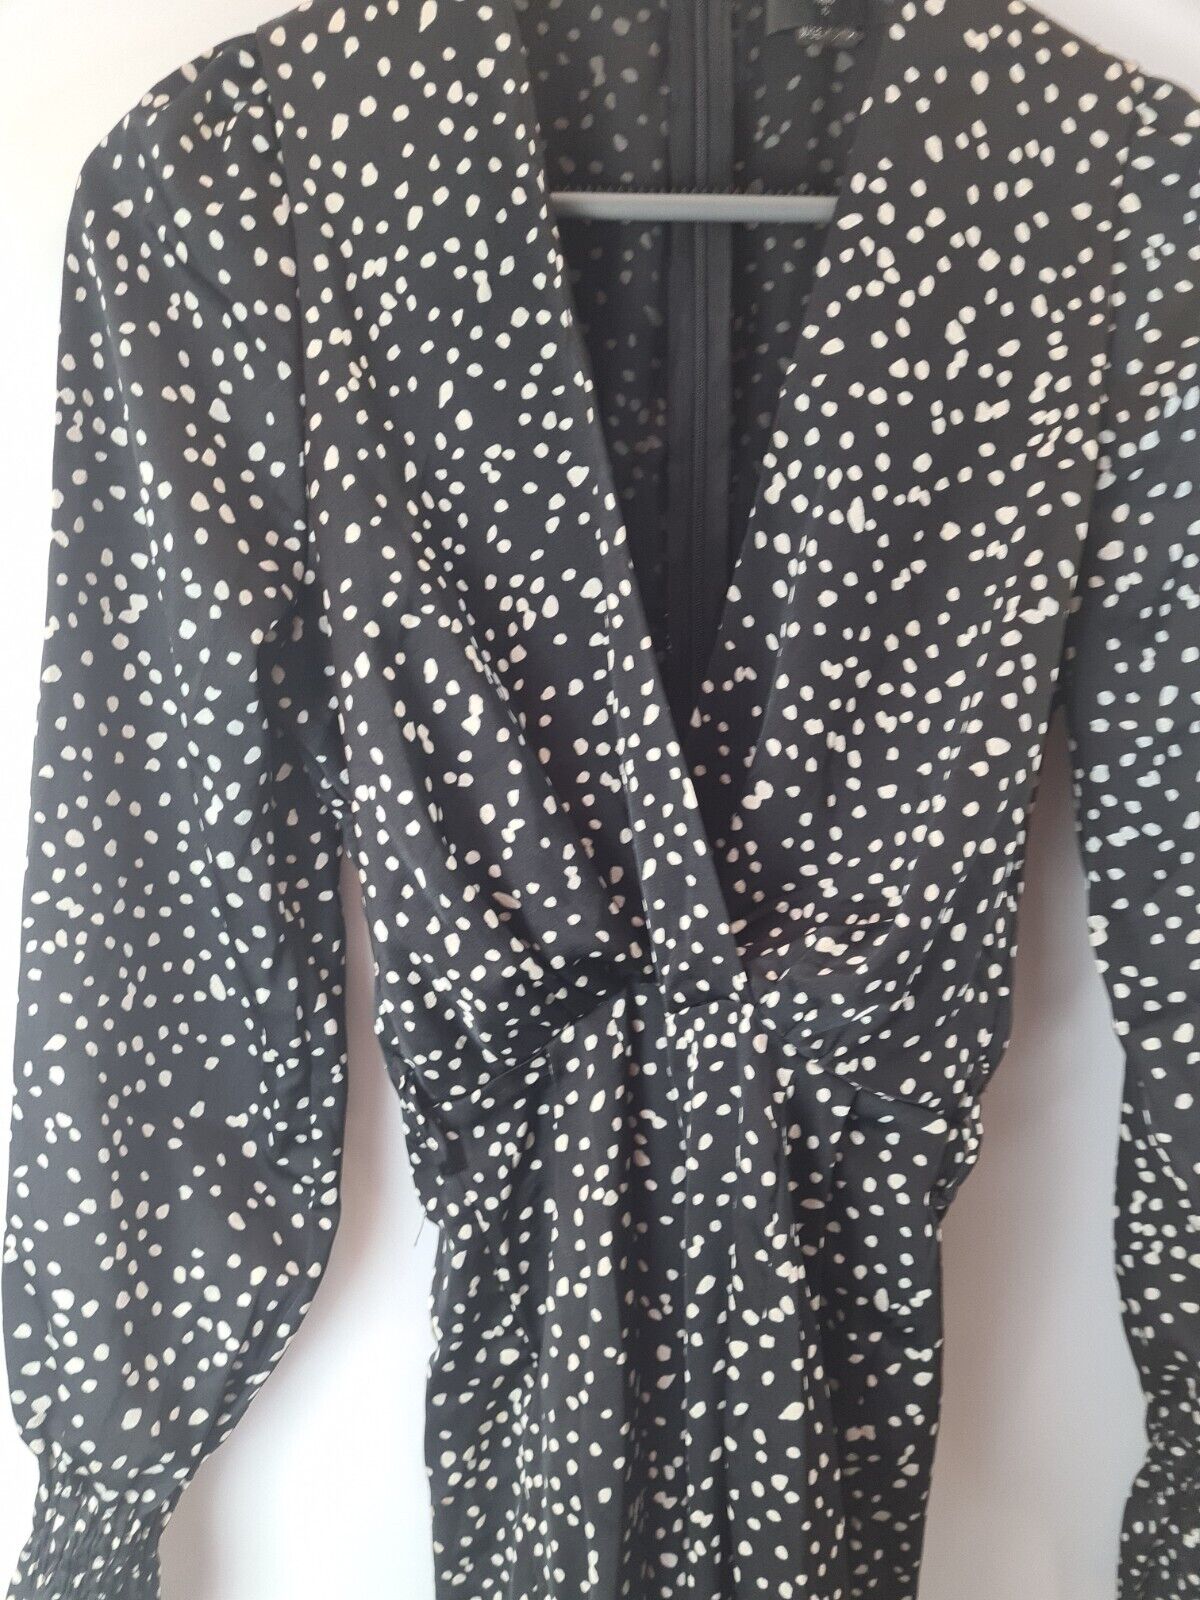 AX Paris Black Polka Dot Belted Jumpsuit Size 6 **** V30